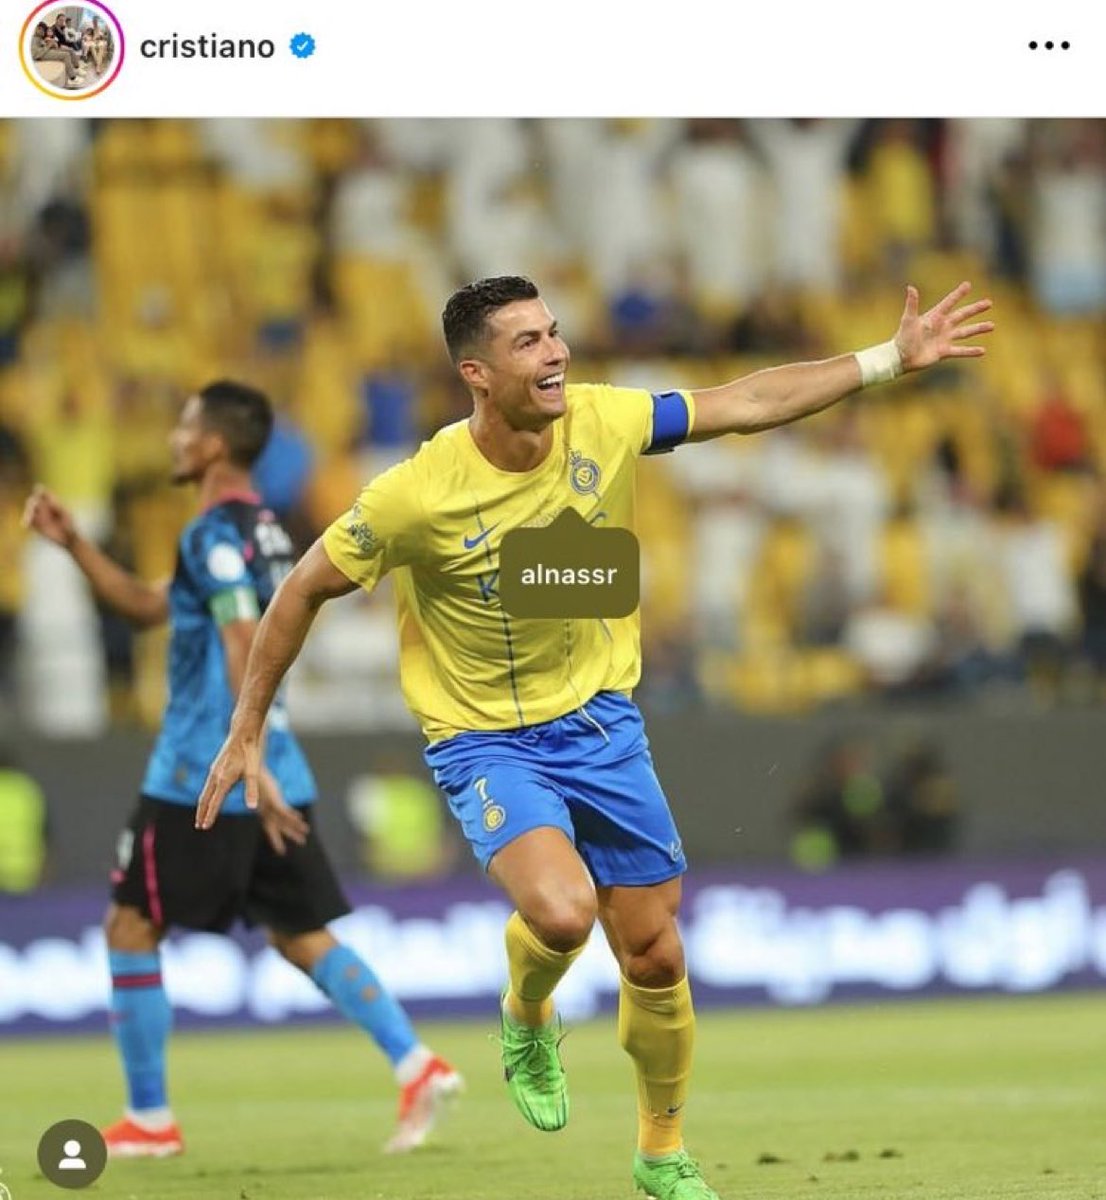 الأسطورة كريستيانو روناادو يضع تاق حساب النادي على شعار #النصر 💛